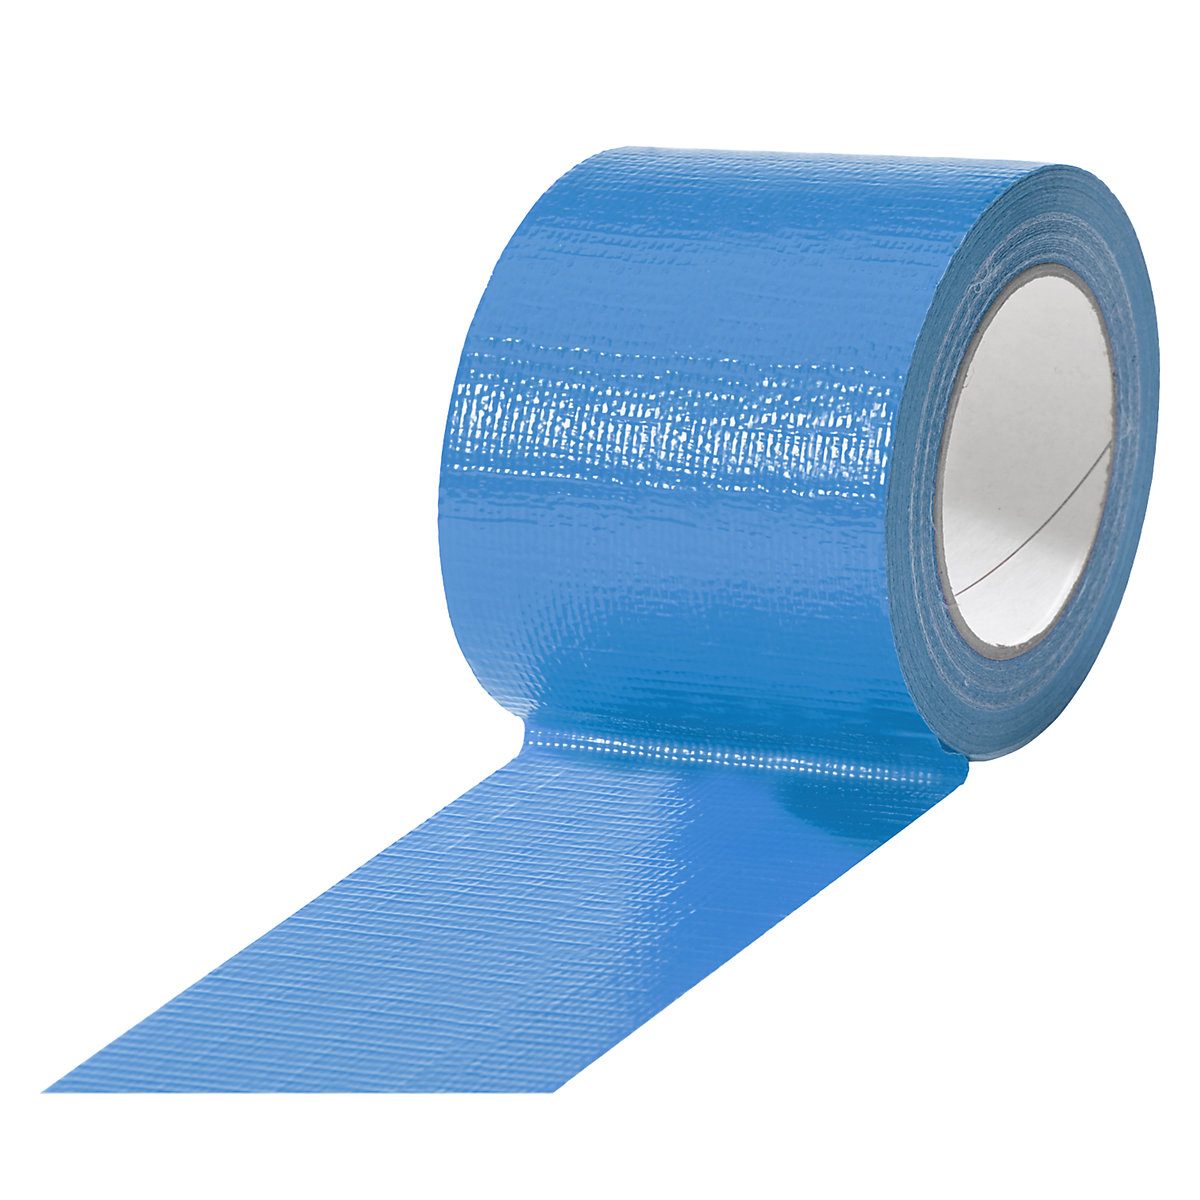 Gewebeband, in verschiedenen Farben, VE 12 Rollen, blau, Bandbreite 75 mm-6